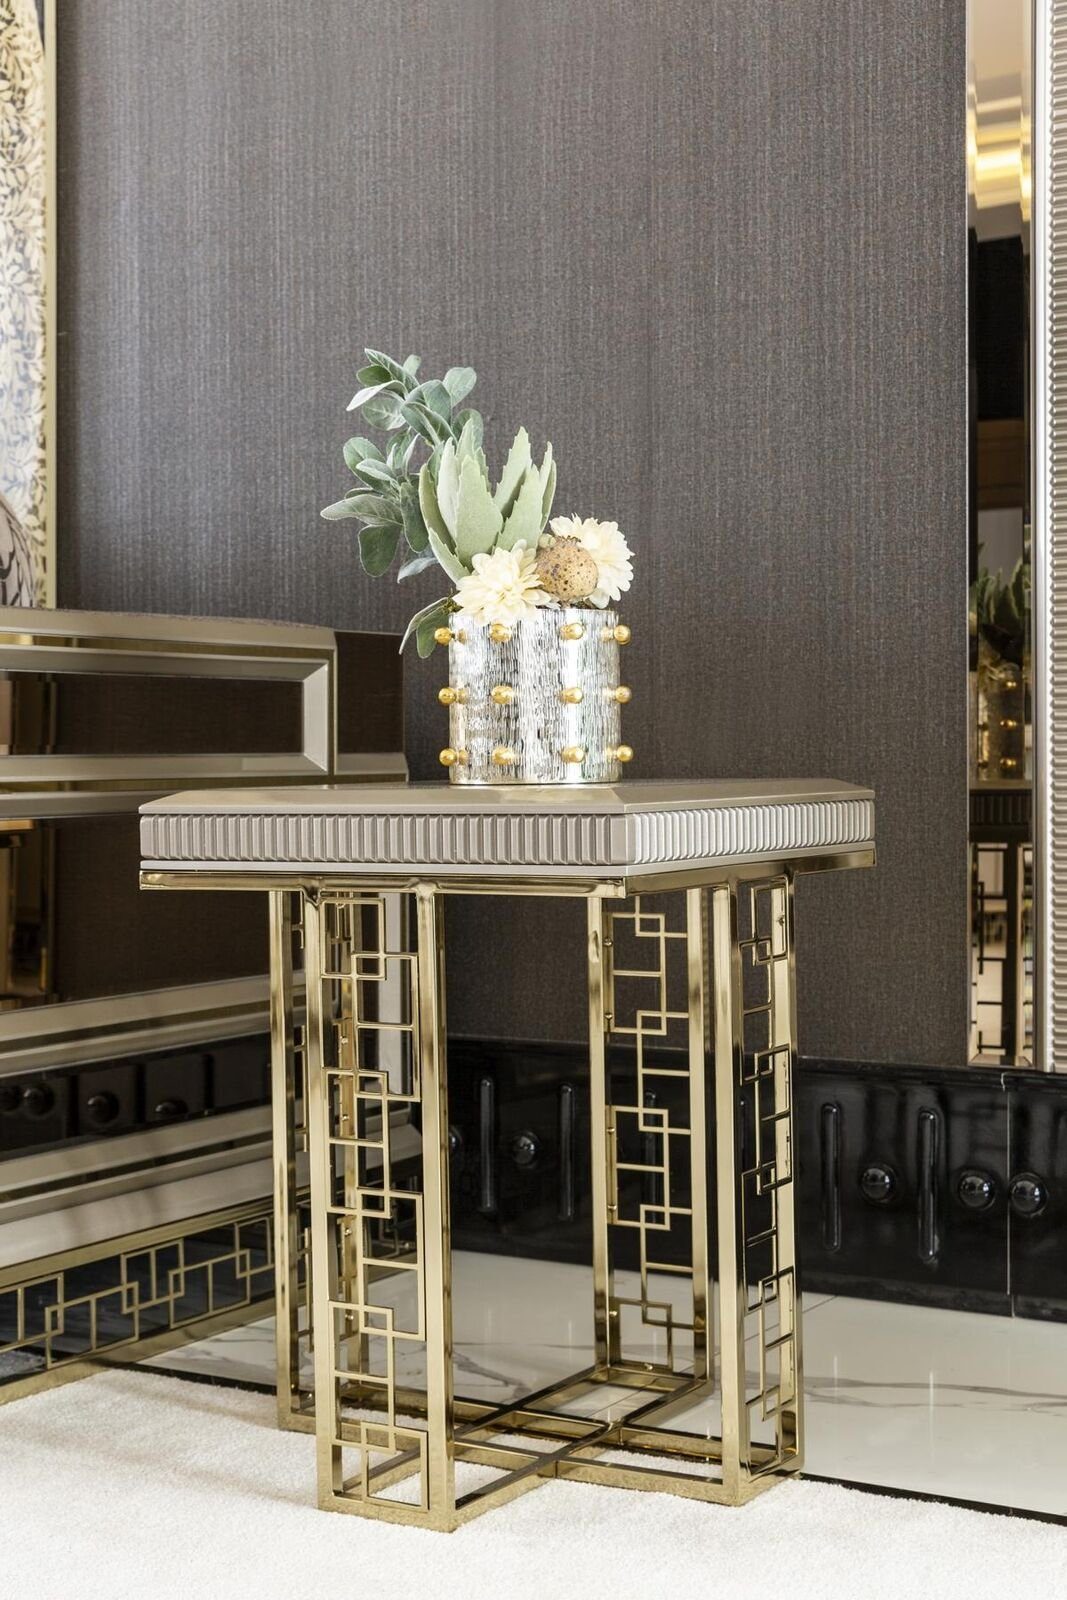 JVmoebel Beistelltisch Beistelltisch Grau Modern Holz Design Wohnzimmer Möbel Luxus Elegantes